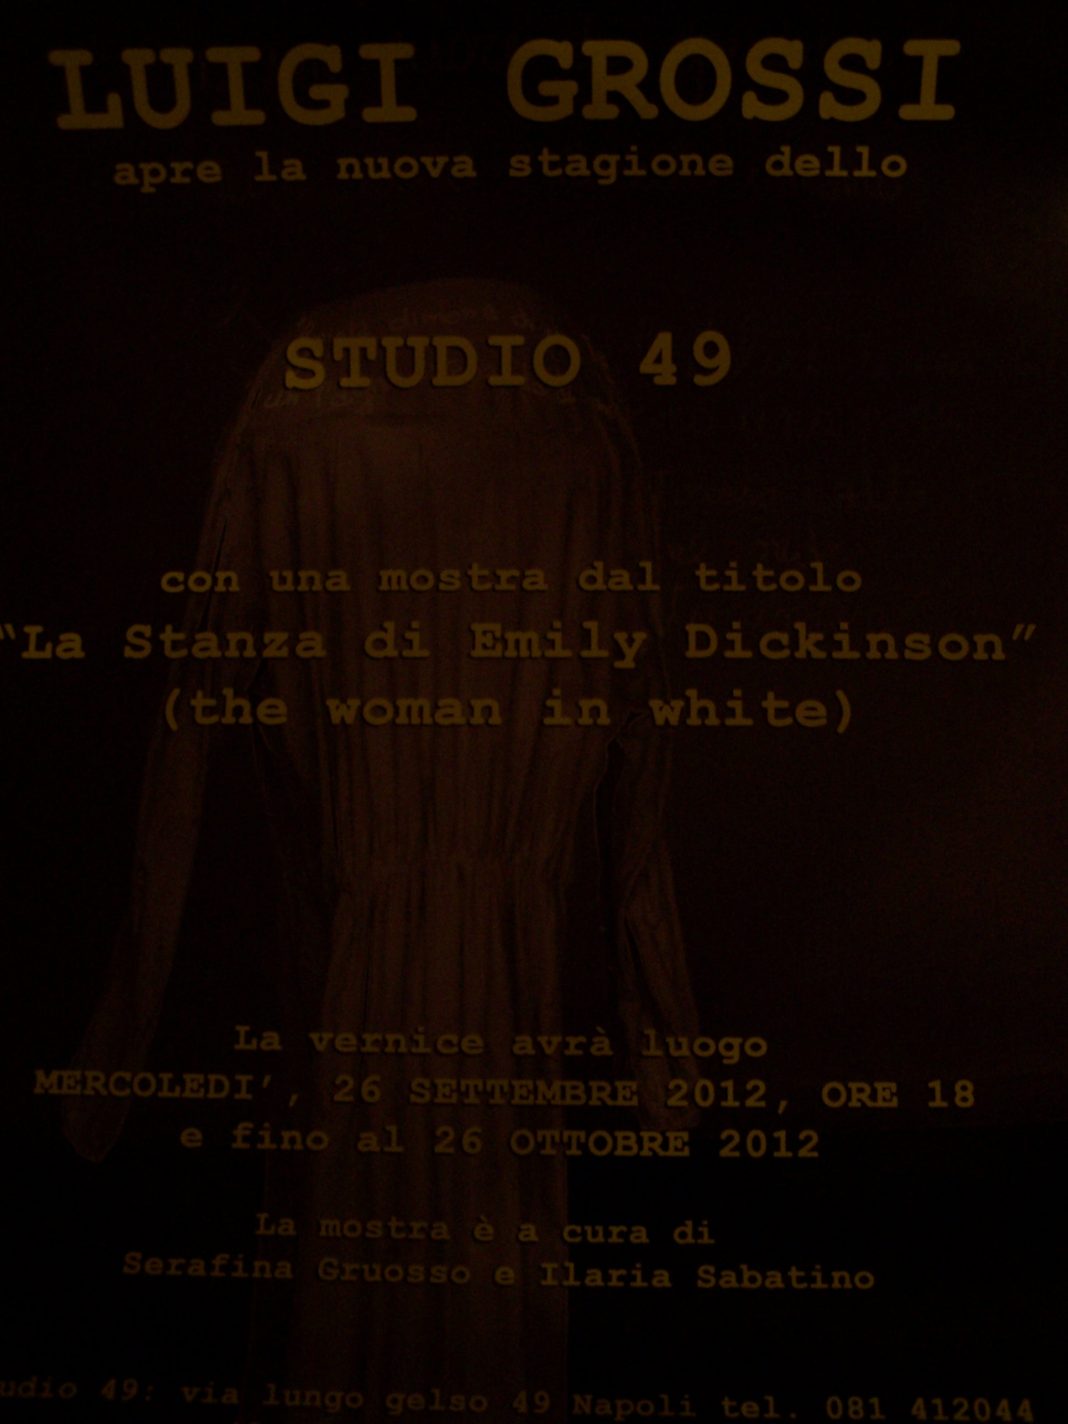 Luigi Grossi – La Stanza di Emily Dickinson (the Woman in White)https://www.exibart.com/repository/media/eventi/2012/09/luigi-grossi-8211-la-stanza-di-emily-dickinson-the-woman-in-white-1068x1424.jpg